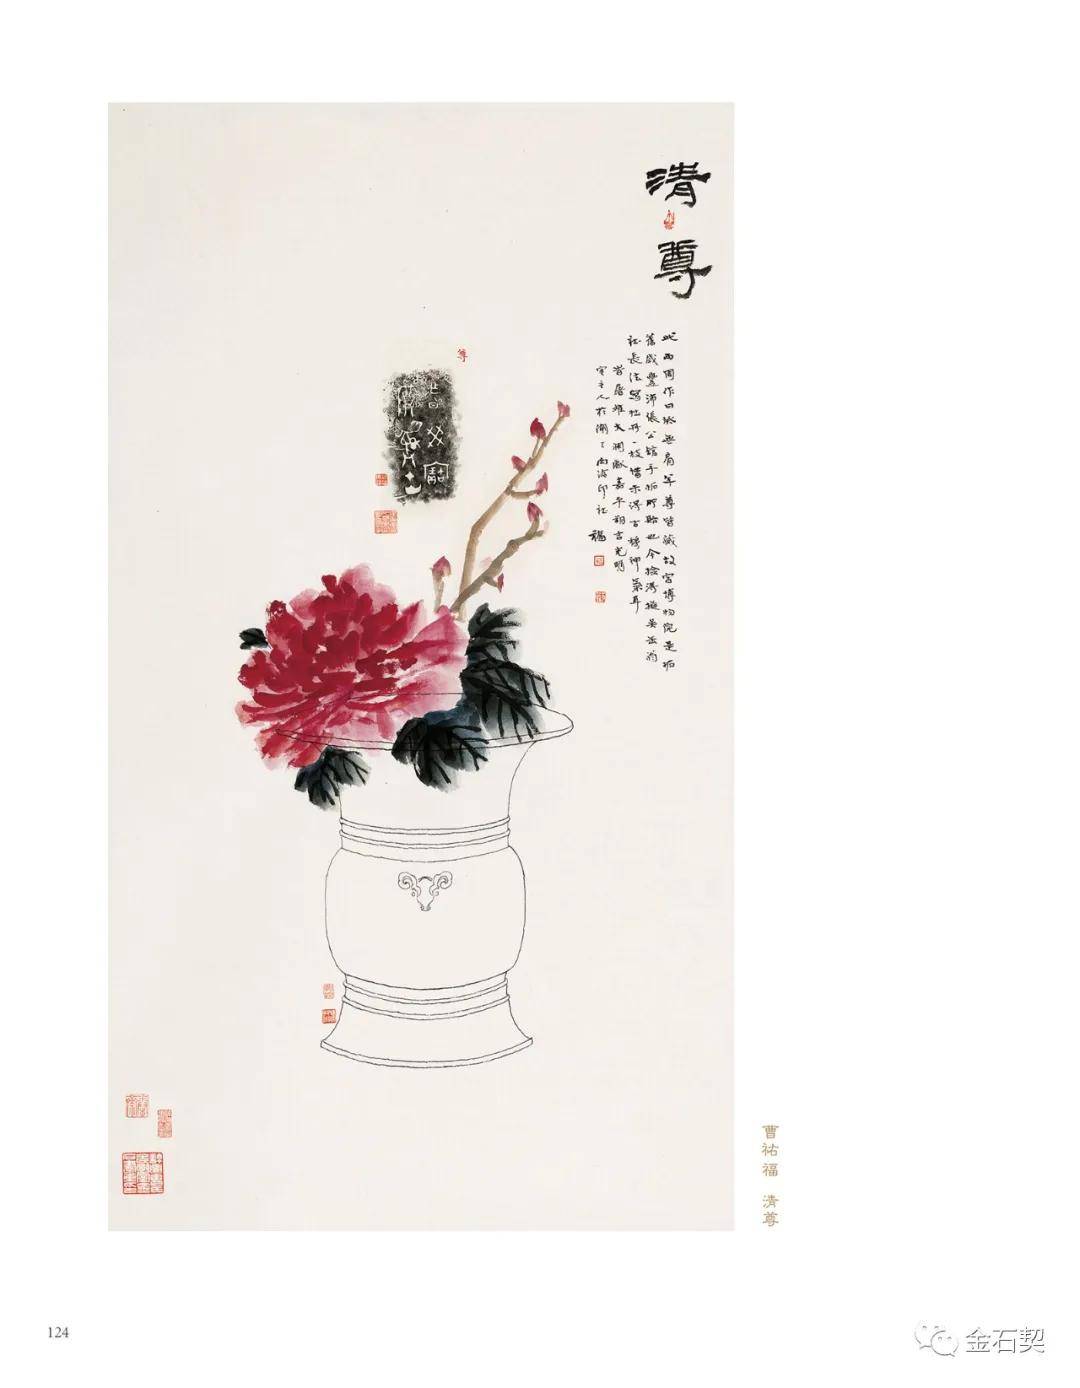 全国首部金石博古画专著 《富贵寿考——中国金石博古画图说》出版